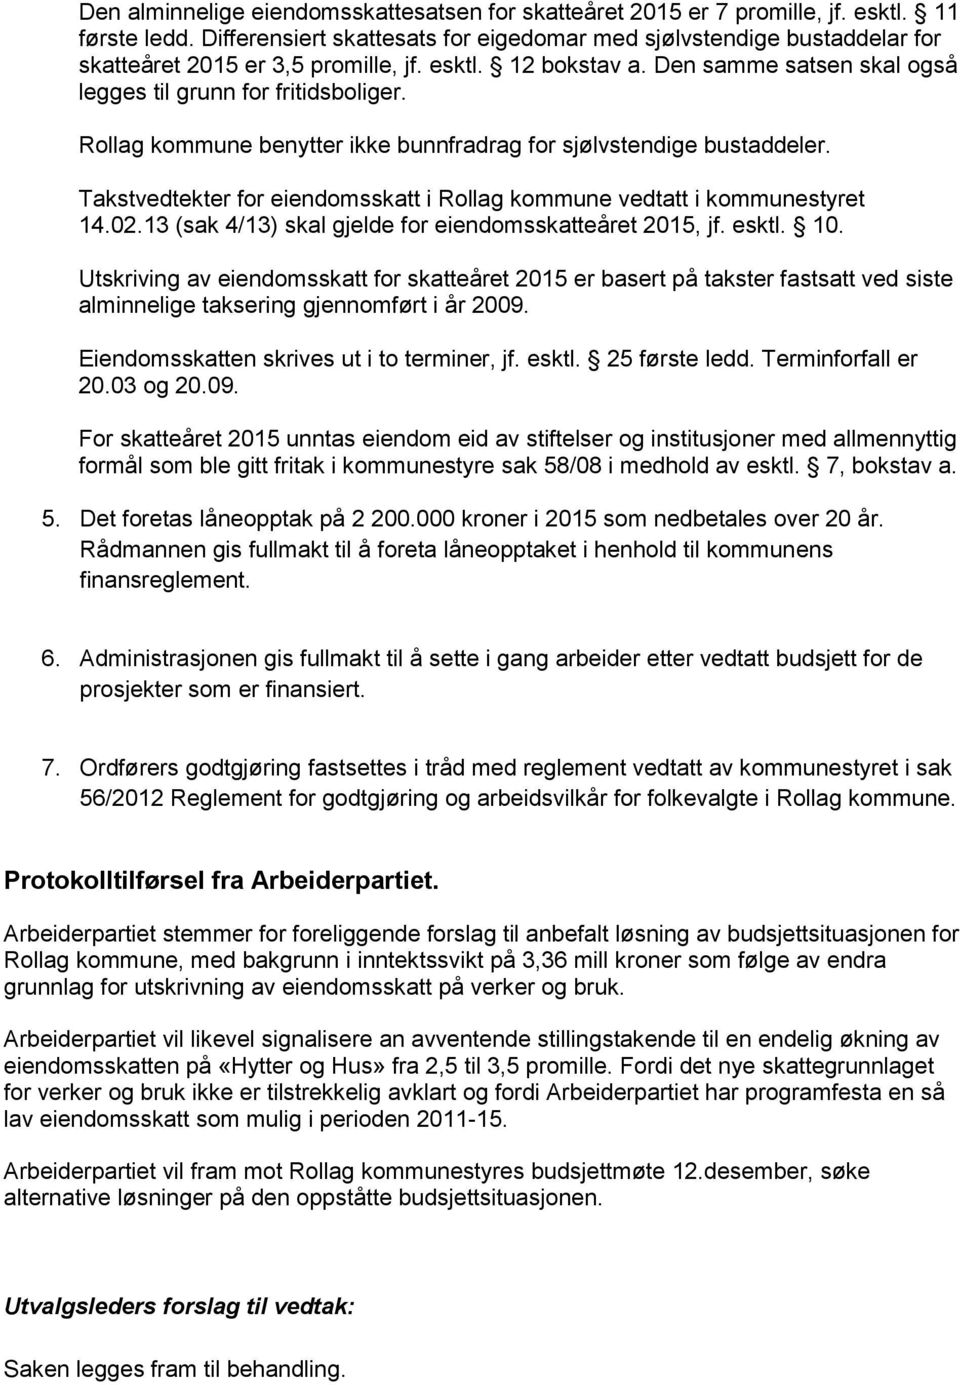 Rollag kommune benytter ikke bunnfradrag for sjølvstendige bustaddeler. Takstvedtekter for eiendomsskatt i Rollag kommune vedtatt i kommunestyret 14.02.